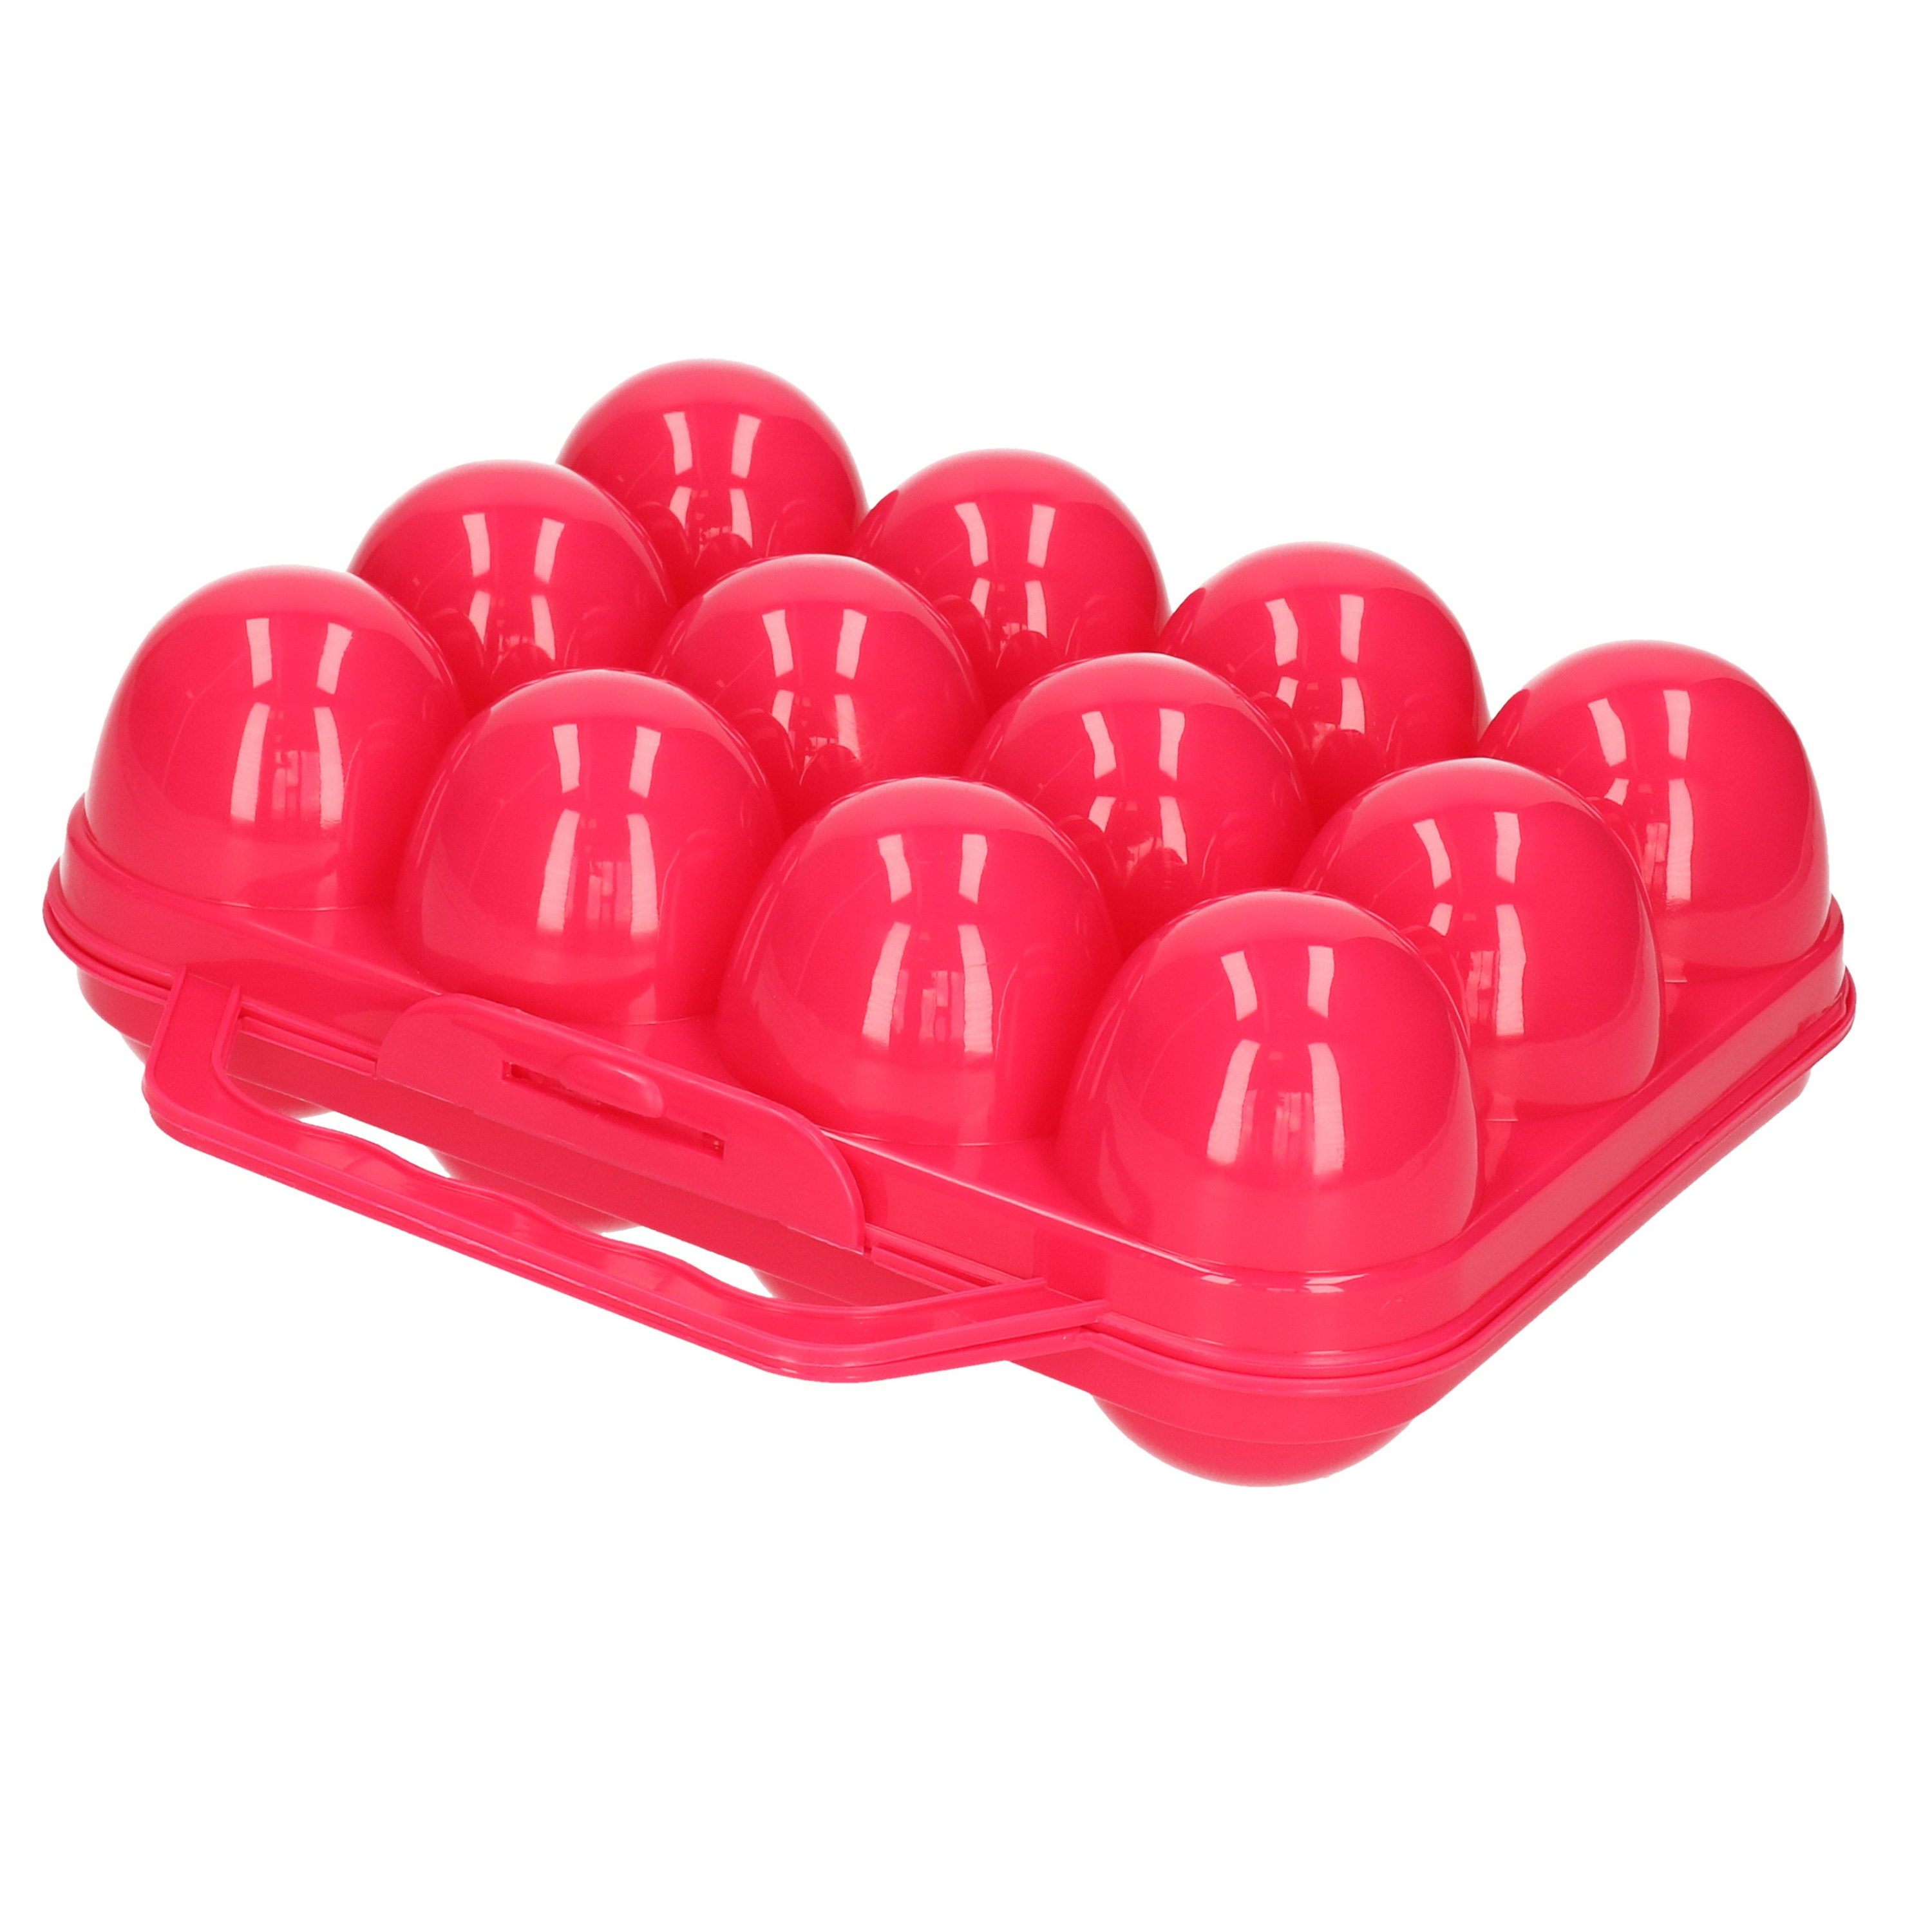 Eierdoos koelkast organizer eierhouder 12 eieren roze kunststof 20 x 18,5 cm